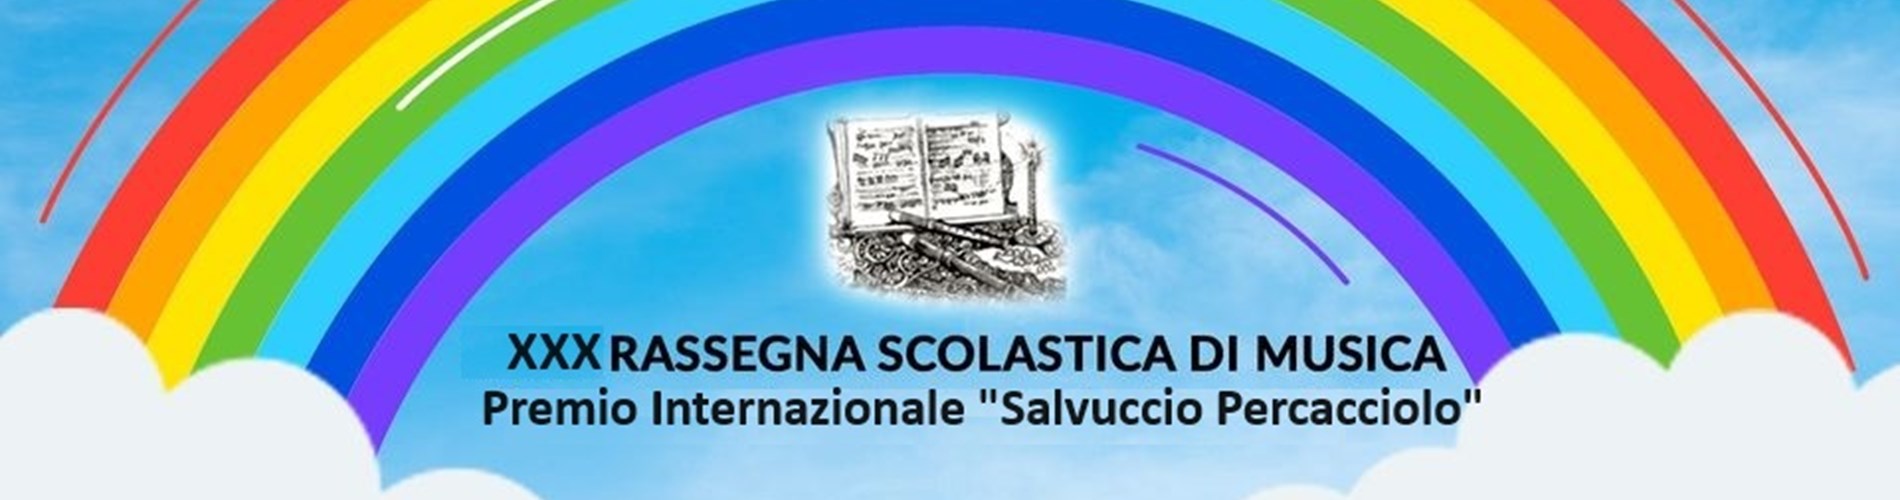 XXX Rassegna Scolastica di Musica - Premio Internazionale “Salvuccio Percacciolo”